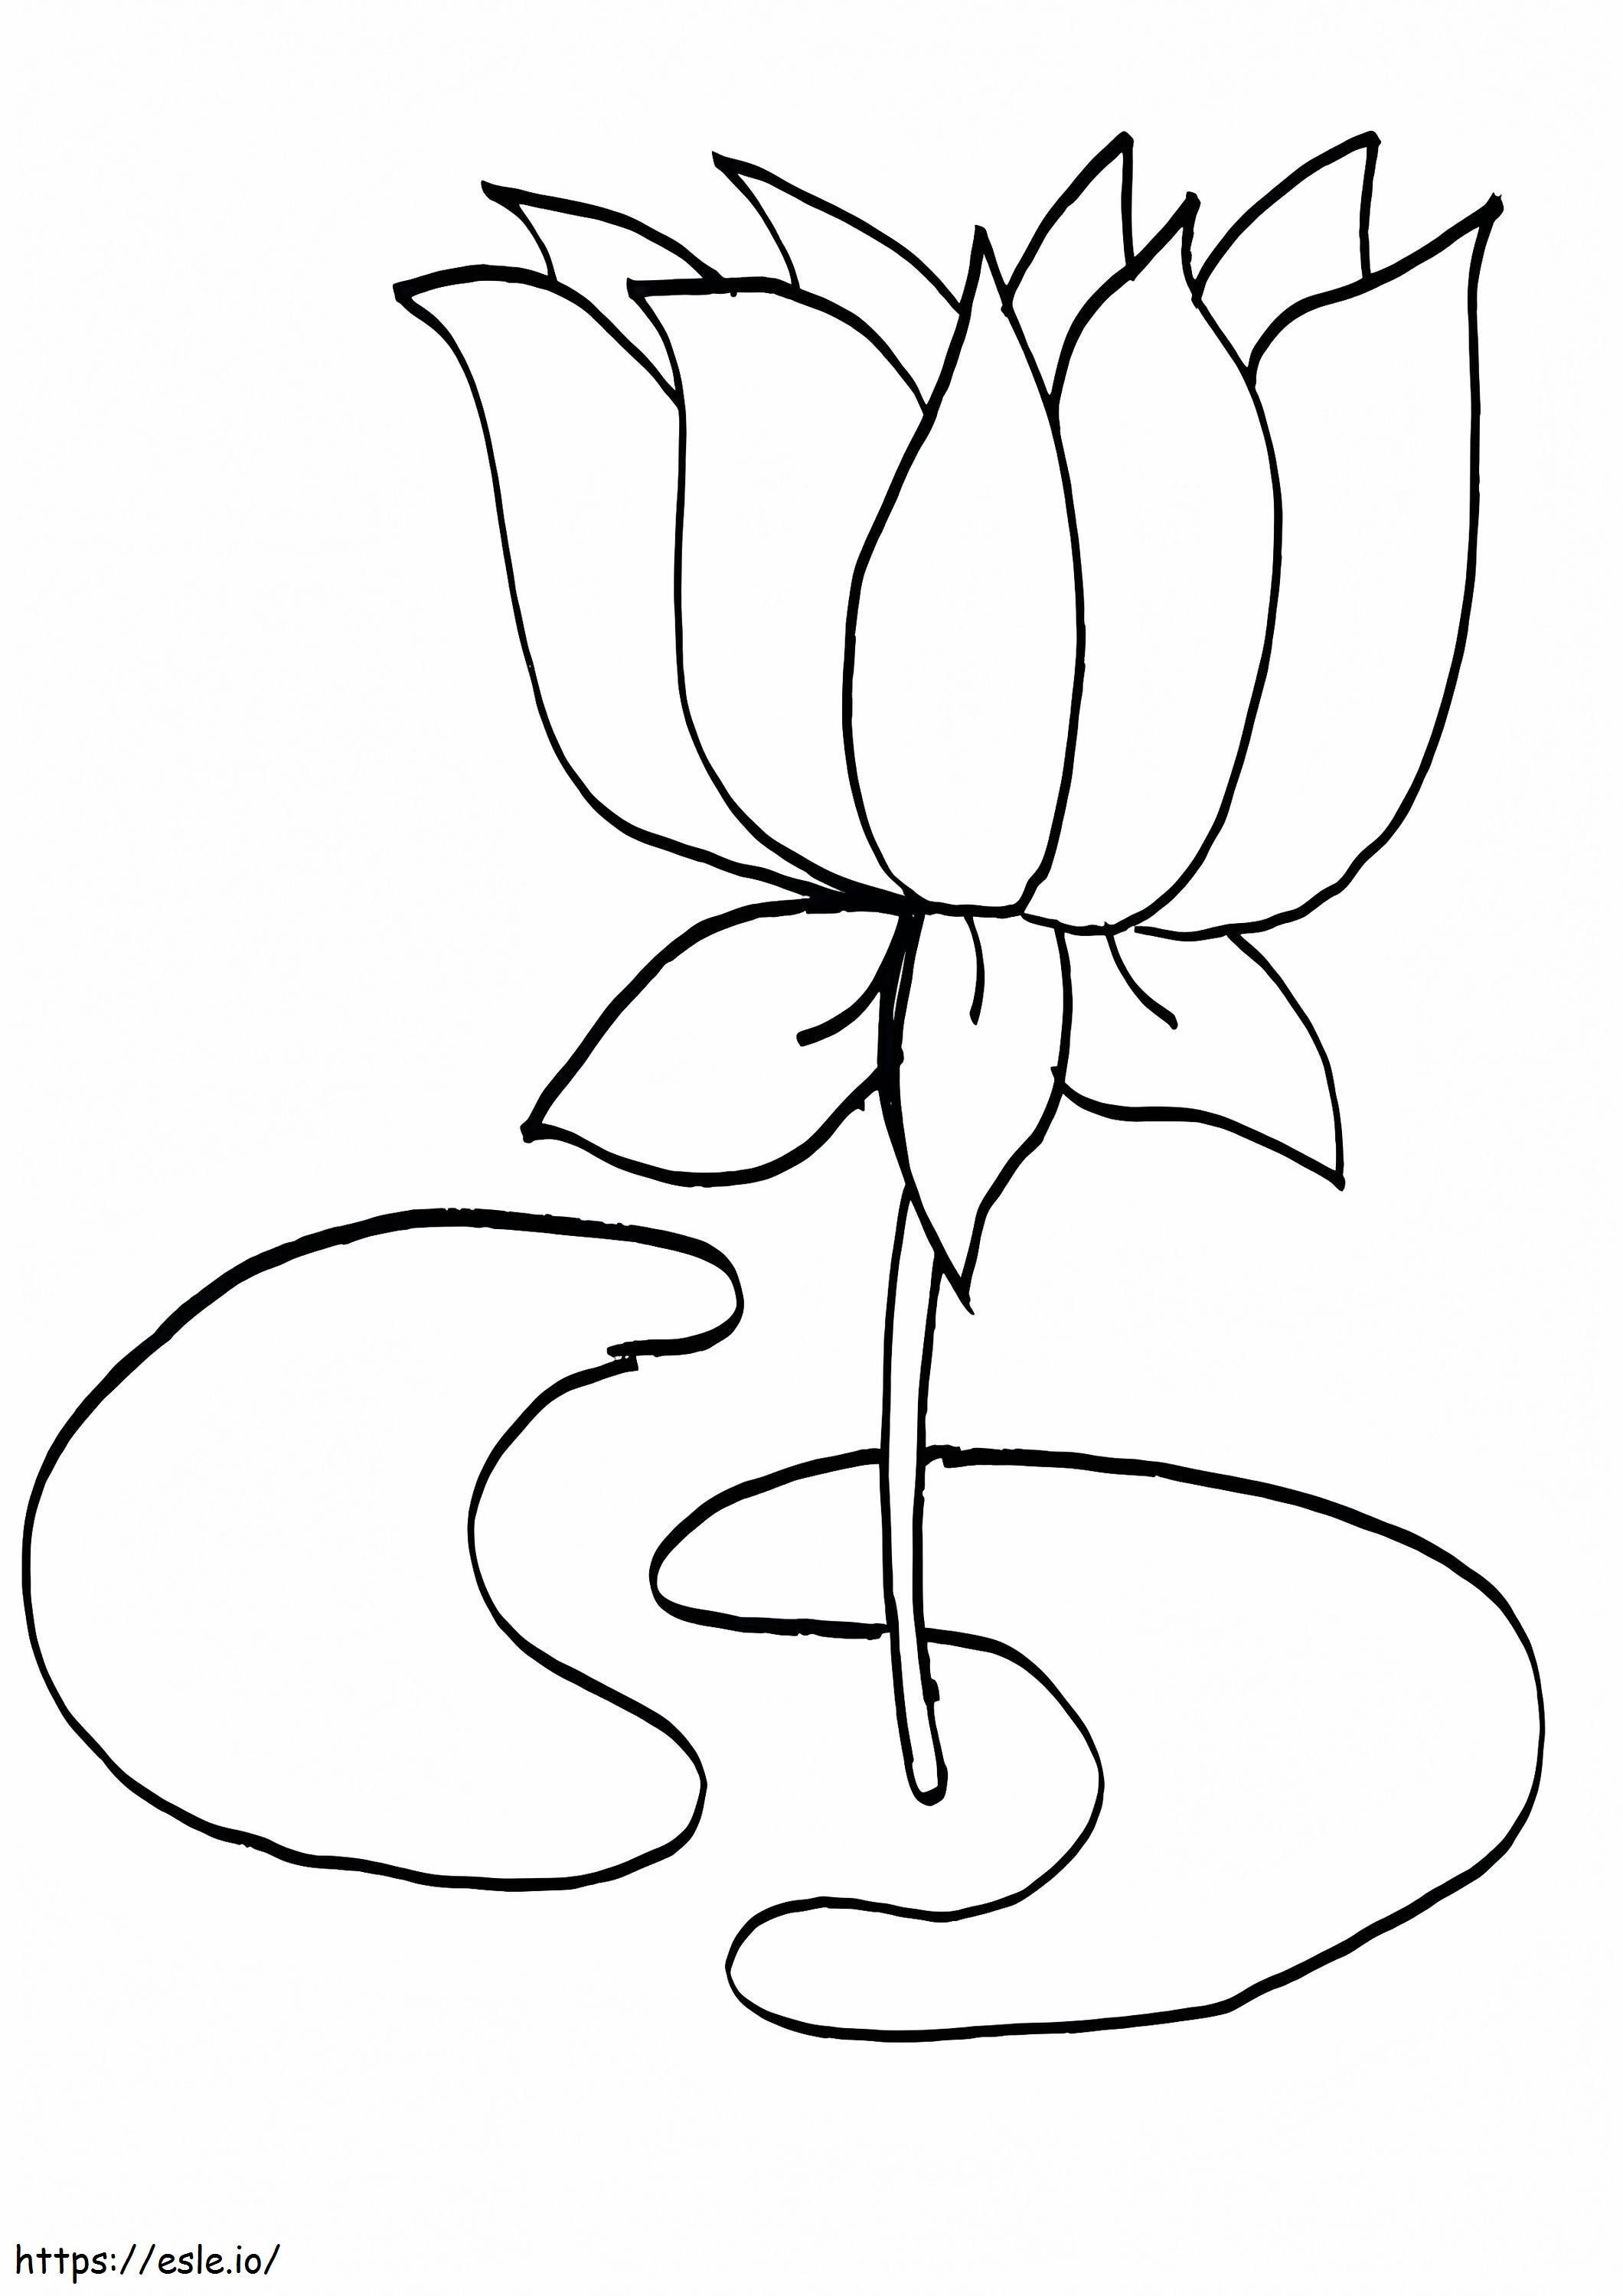 Mooie Lotusbloem kleurplaat kleurplaat